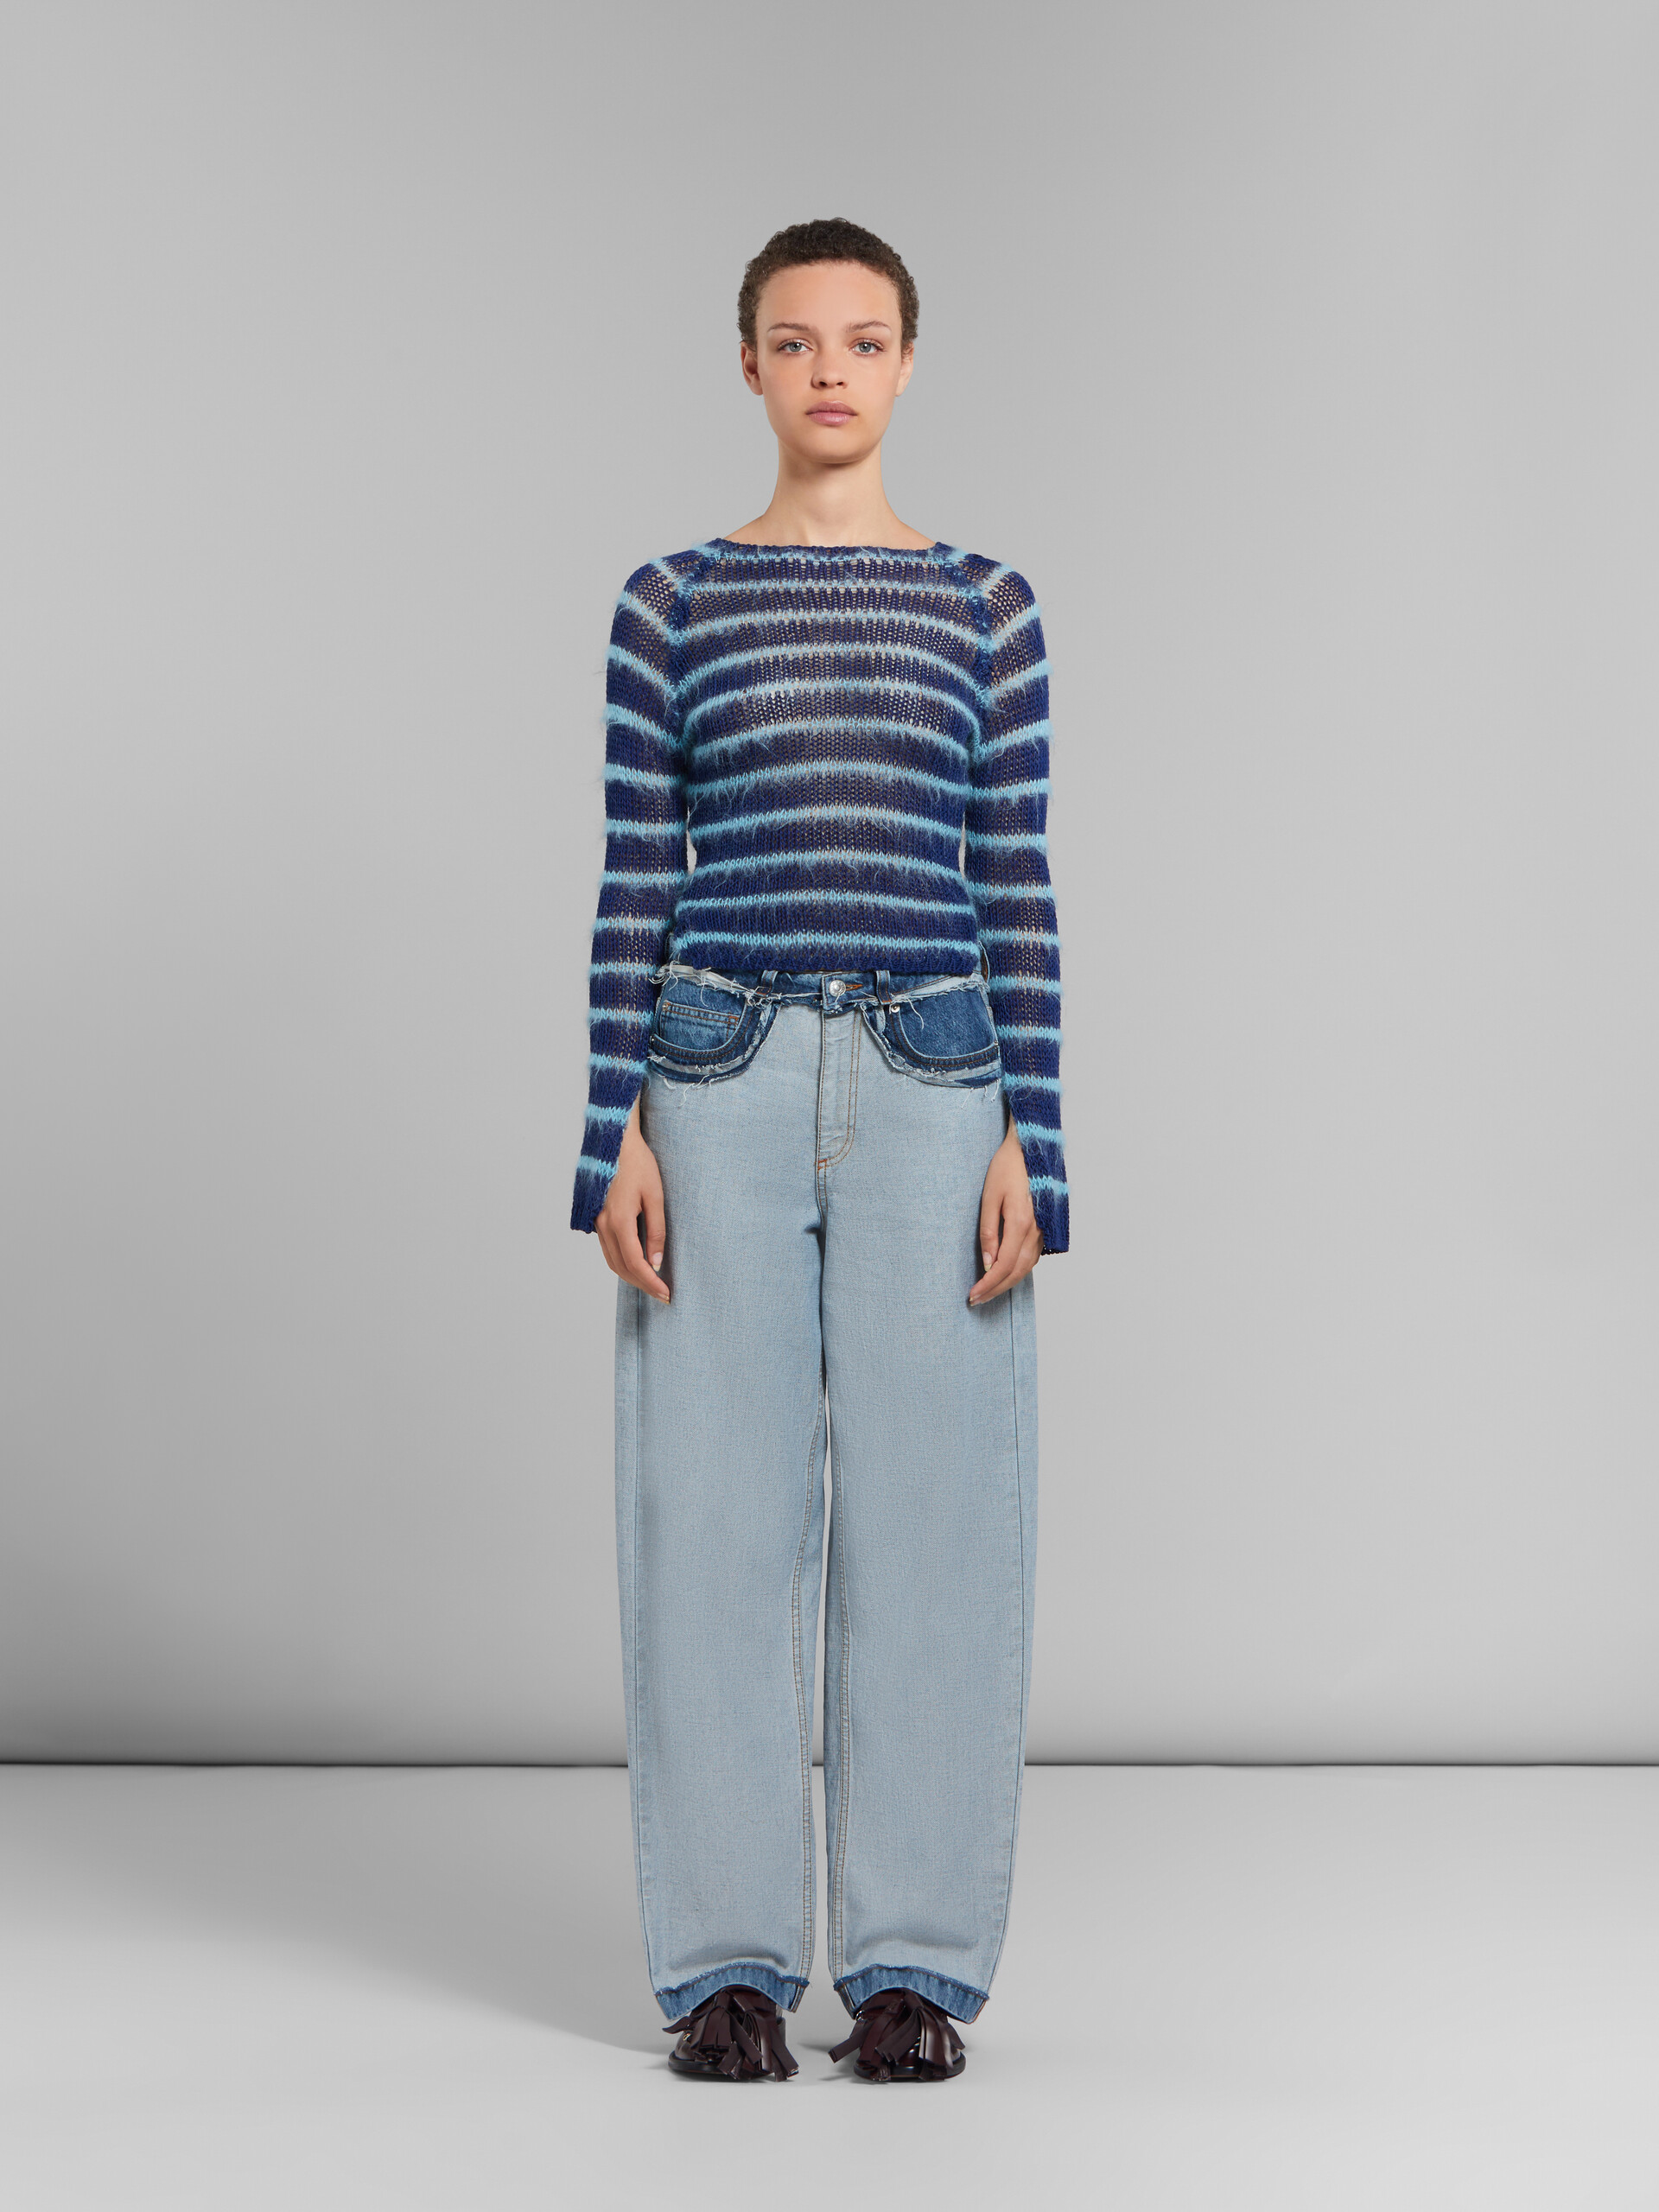 Blaue Denim-Jeans in Inside-Out-Optik und Karottenpassform - Hosen - Image 2